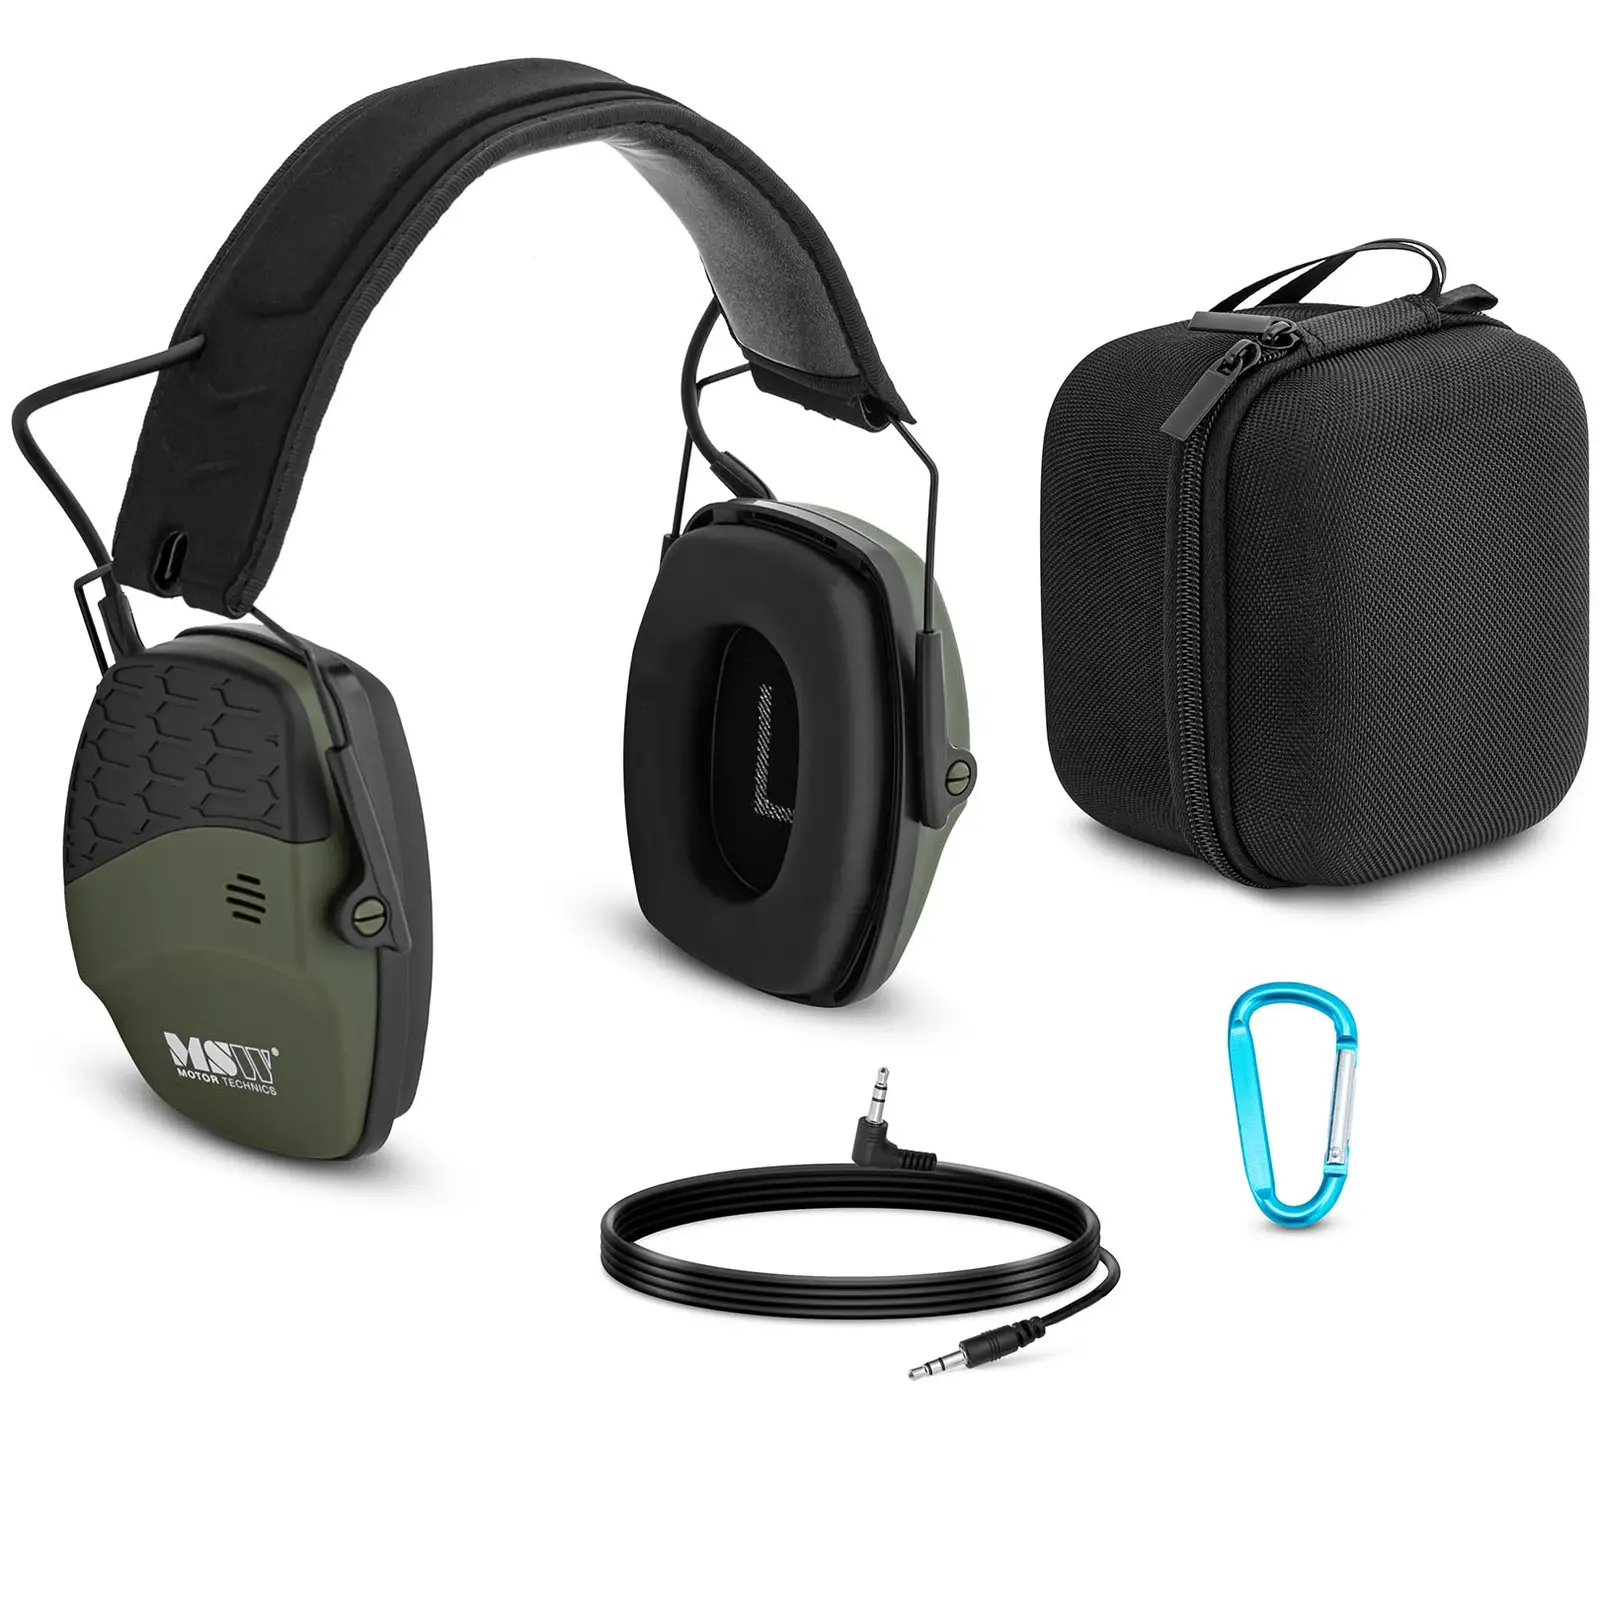 Pracovní sluchátka s Bluetooth - dynamická regulace vnějšího hluku - zelená barva